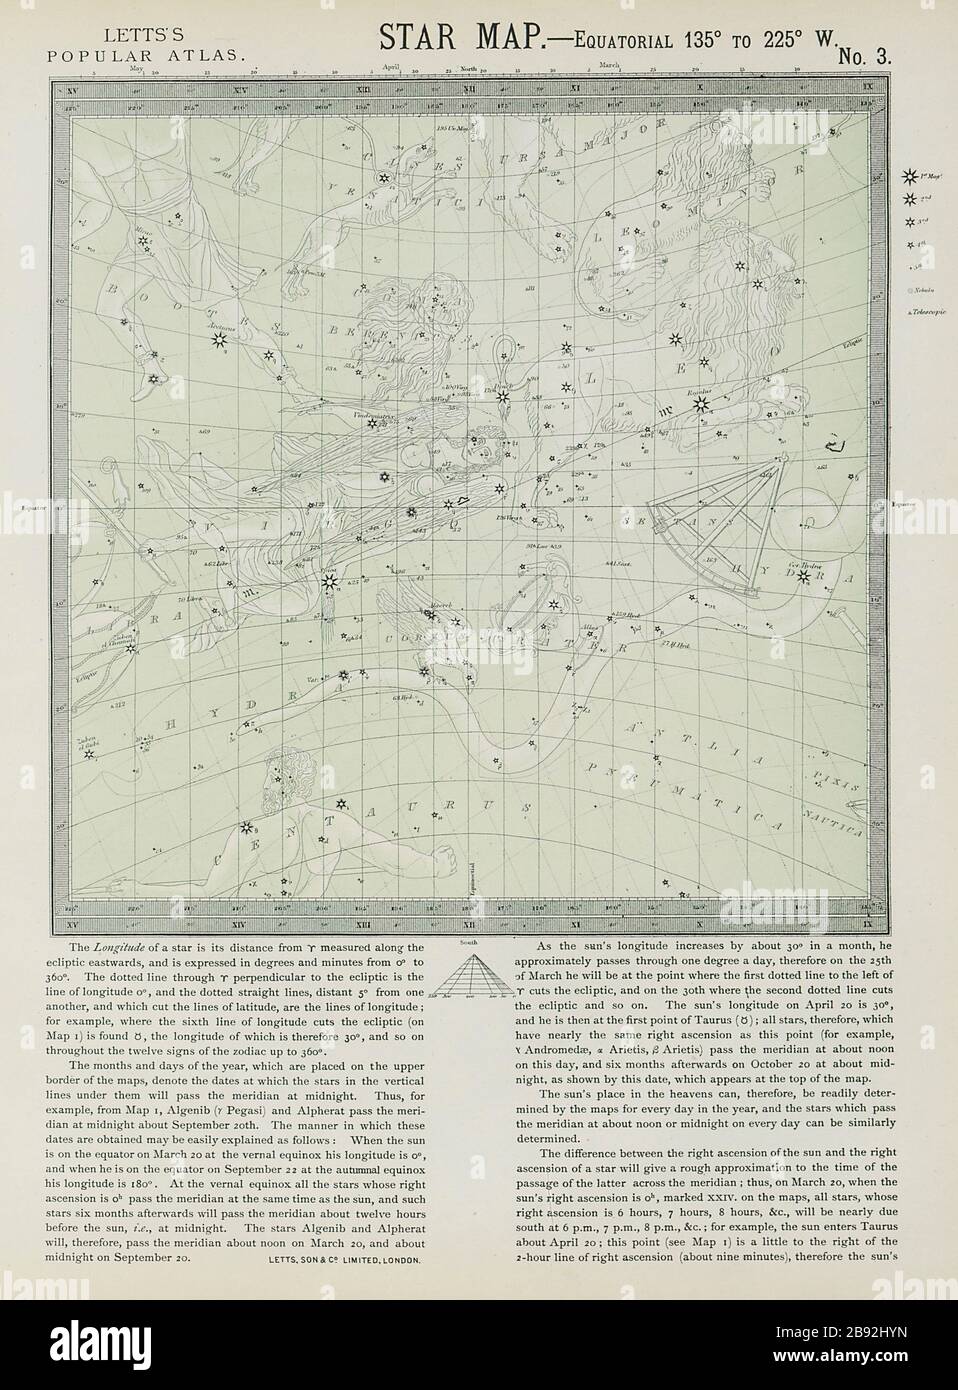 ASTRONOMISCHE HIMMELSKARTE Diagramm Zeichen Herbst Leo Jungfrau Waage. LETTS IM JAHR 1884 Stockfoto